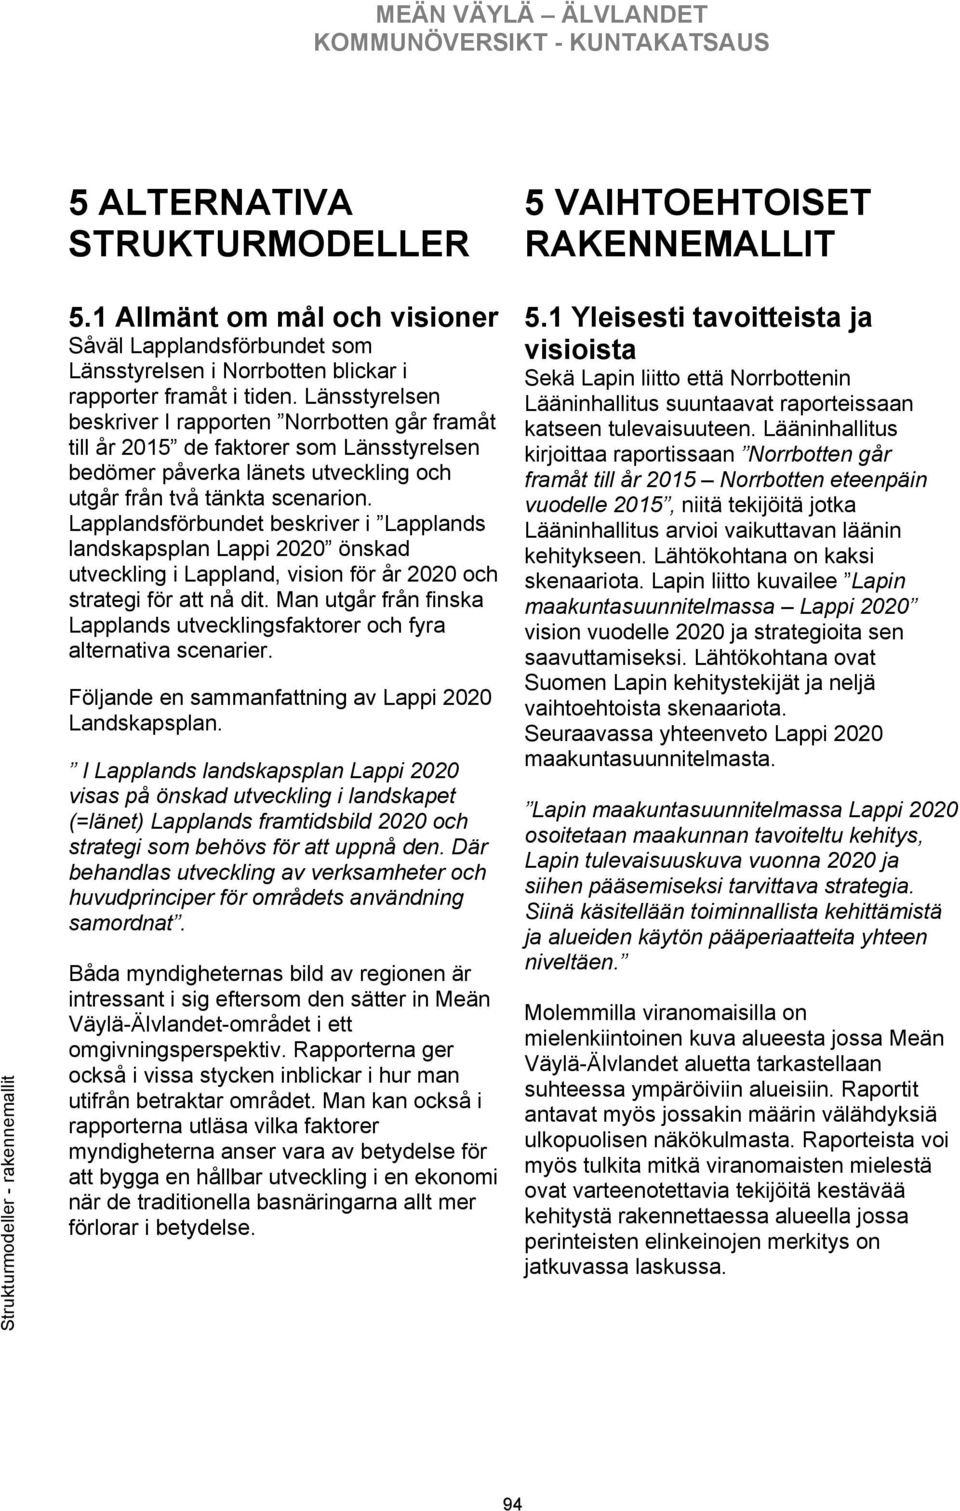 Länsstyrelsen beskriver I rapporten Norrbotten går framåt till år 2015 de faktorer som Länsstyrelsen bedömer påverka länets utveckling och utgår från två tänkta scenarion.